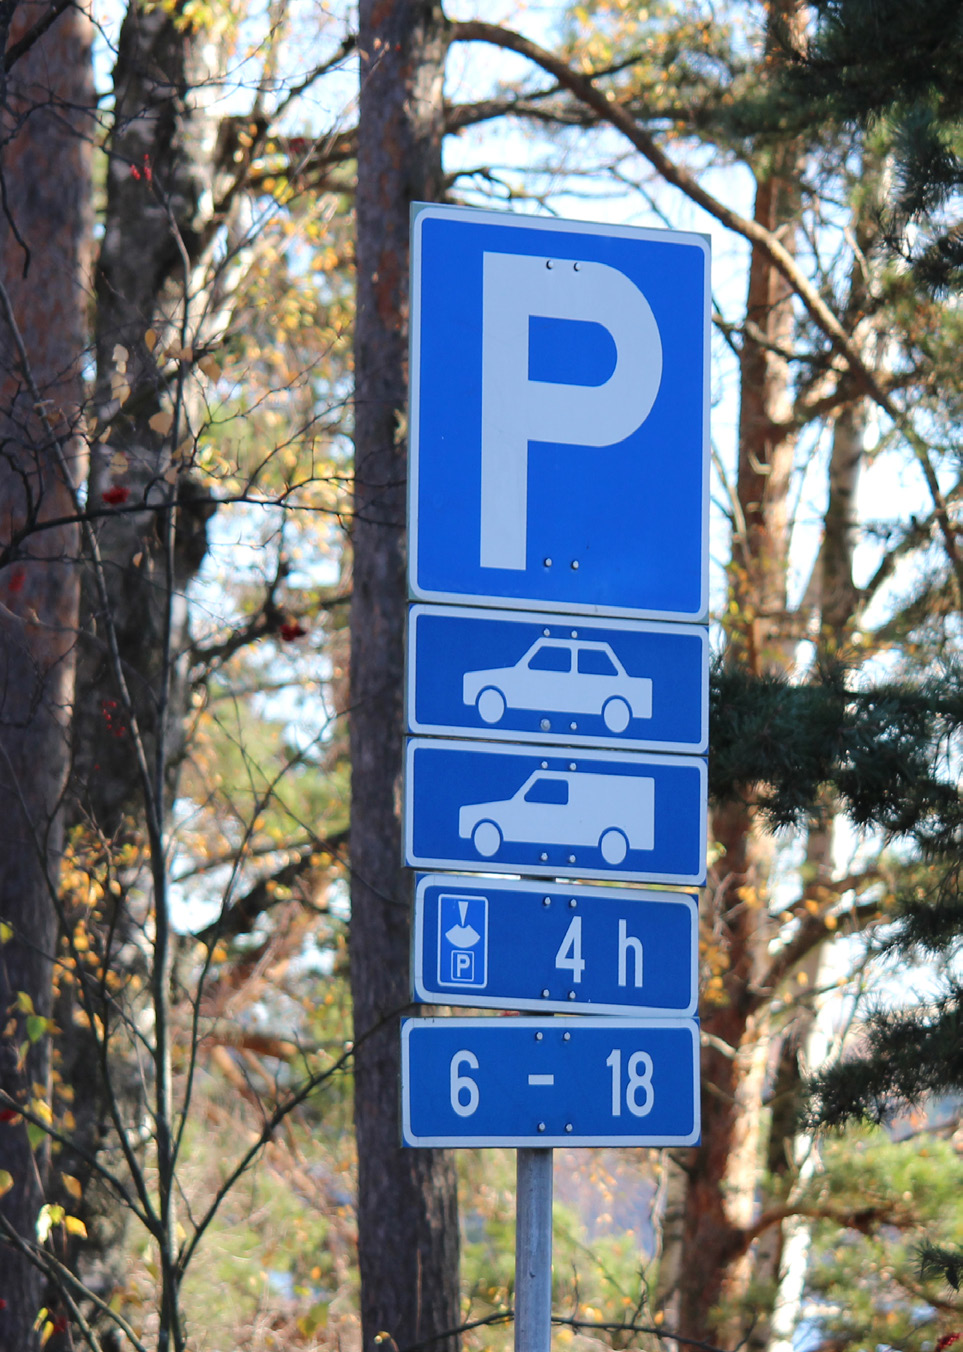 Muut teknisen keskuksen palvelut ja tehtävät Espoossa on turvallista liikkua Liikenneturvallisuuden myönteinen kehitys on jatkunut Espoossa tasaisesti koko 2000-luvun.